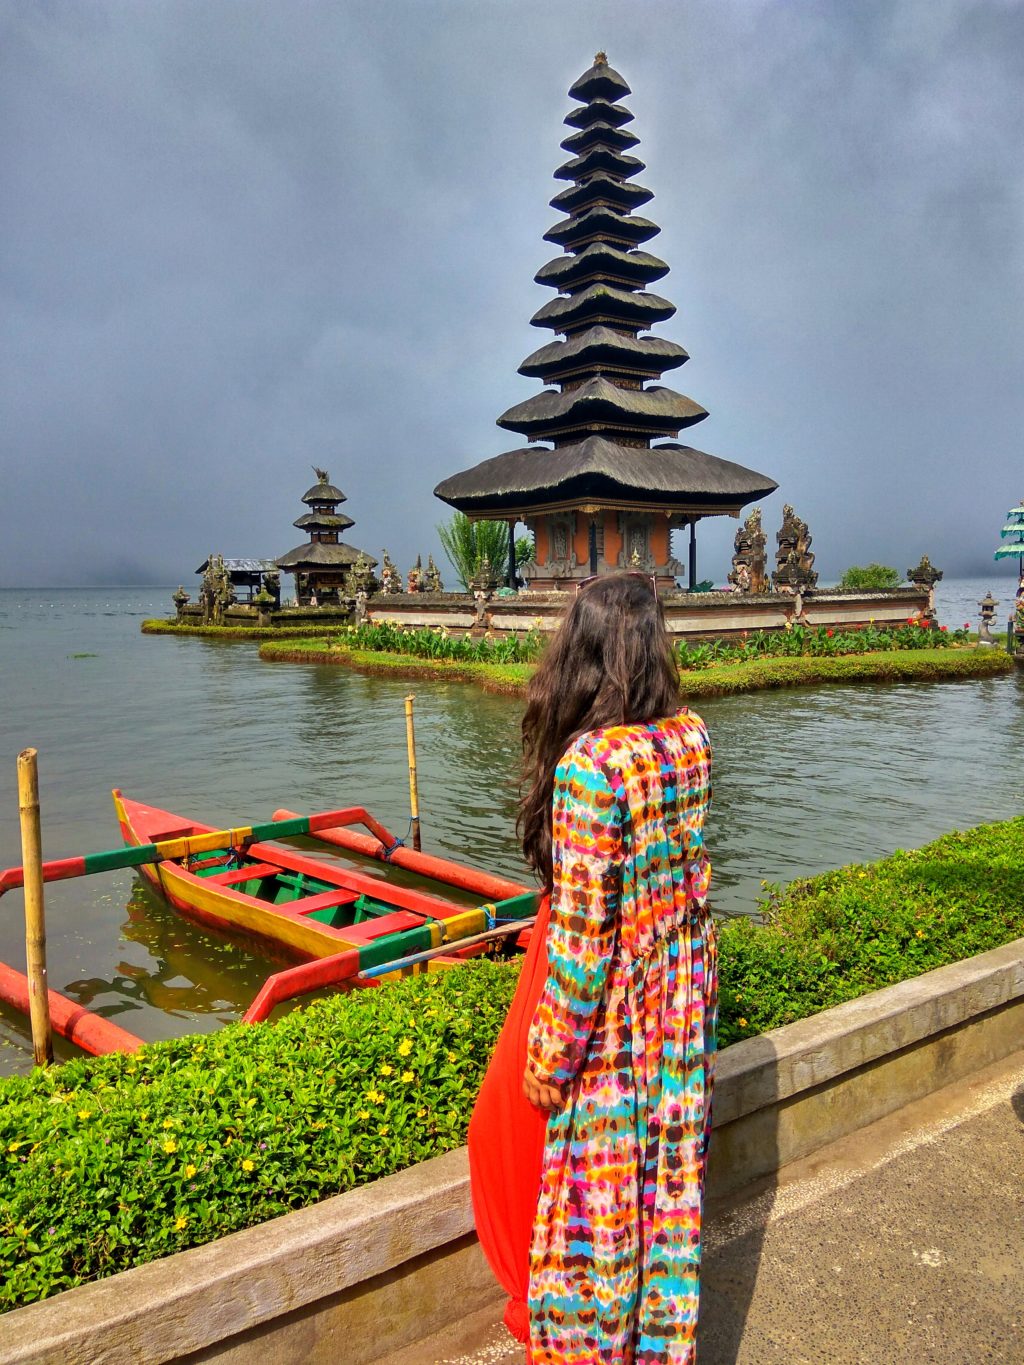 Bali 10 Days Itinerary - Ulun Danu Beratan Temple in Bali